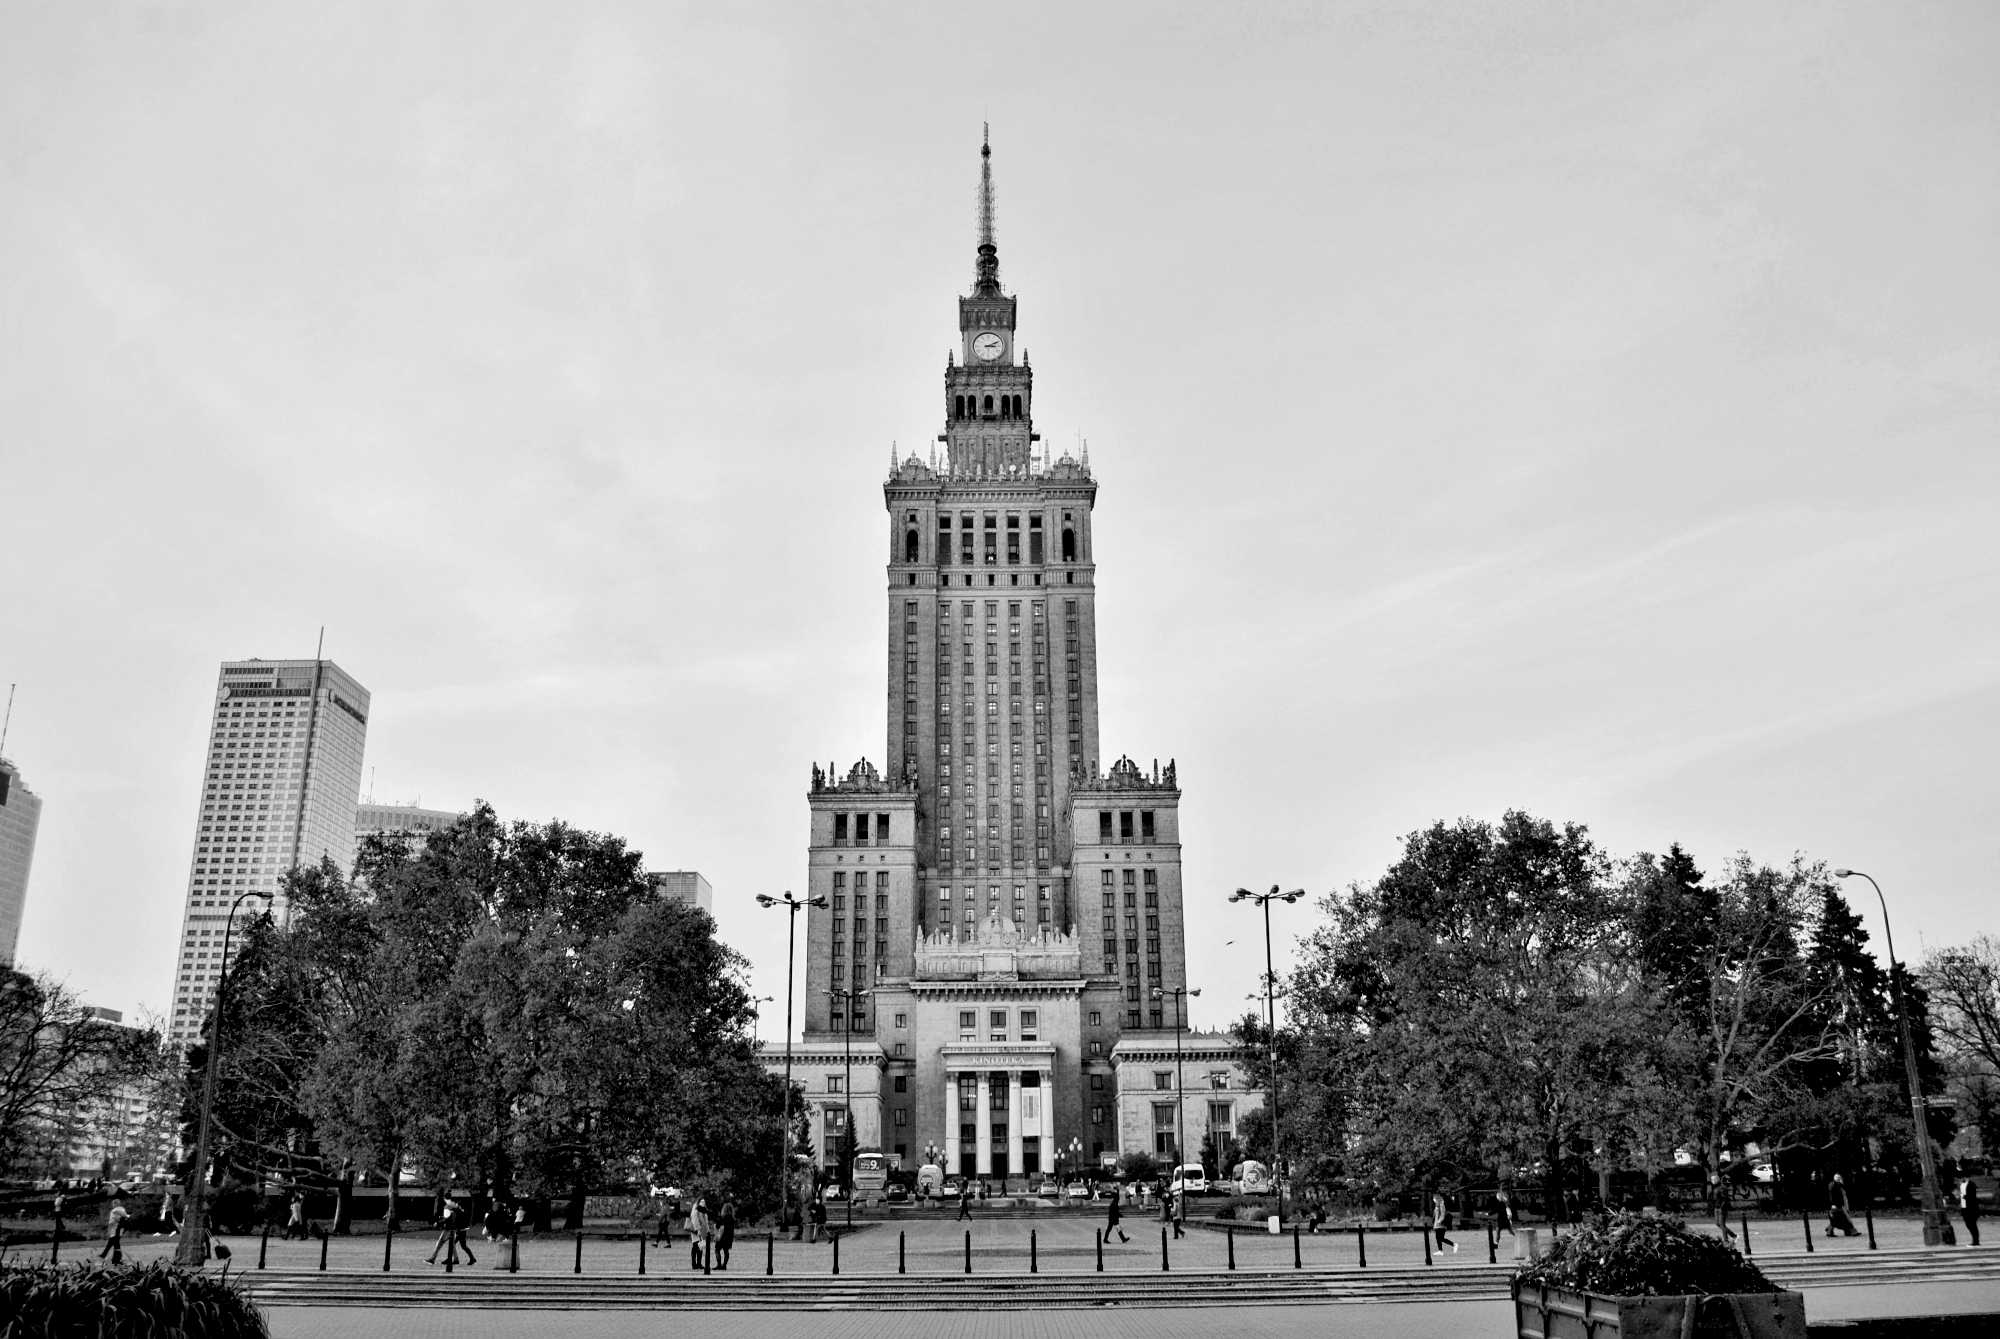 Polonia - Unione europea: lo scontro costituzionale e culturale